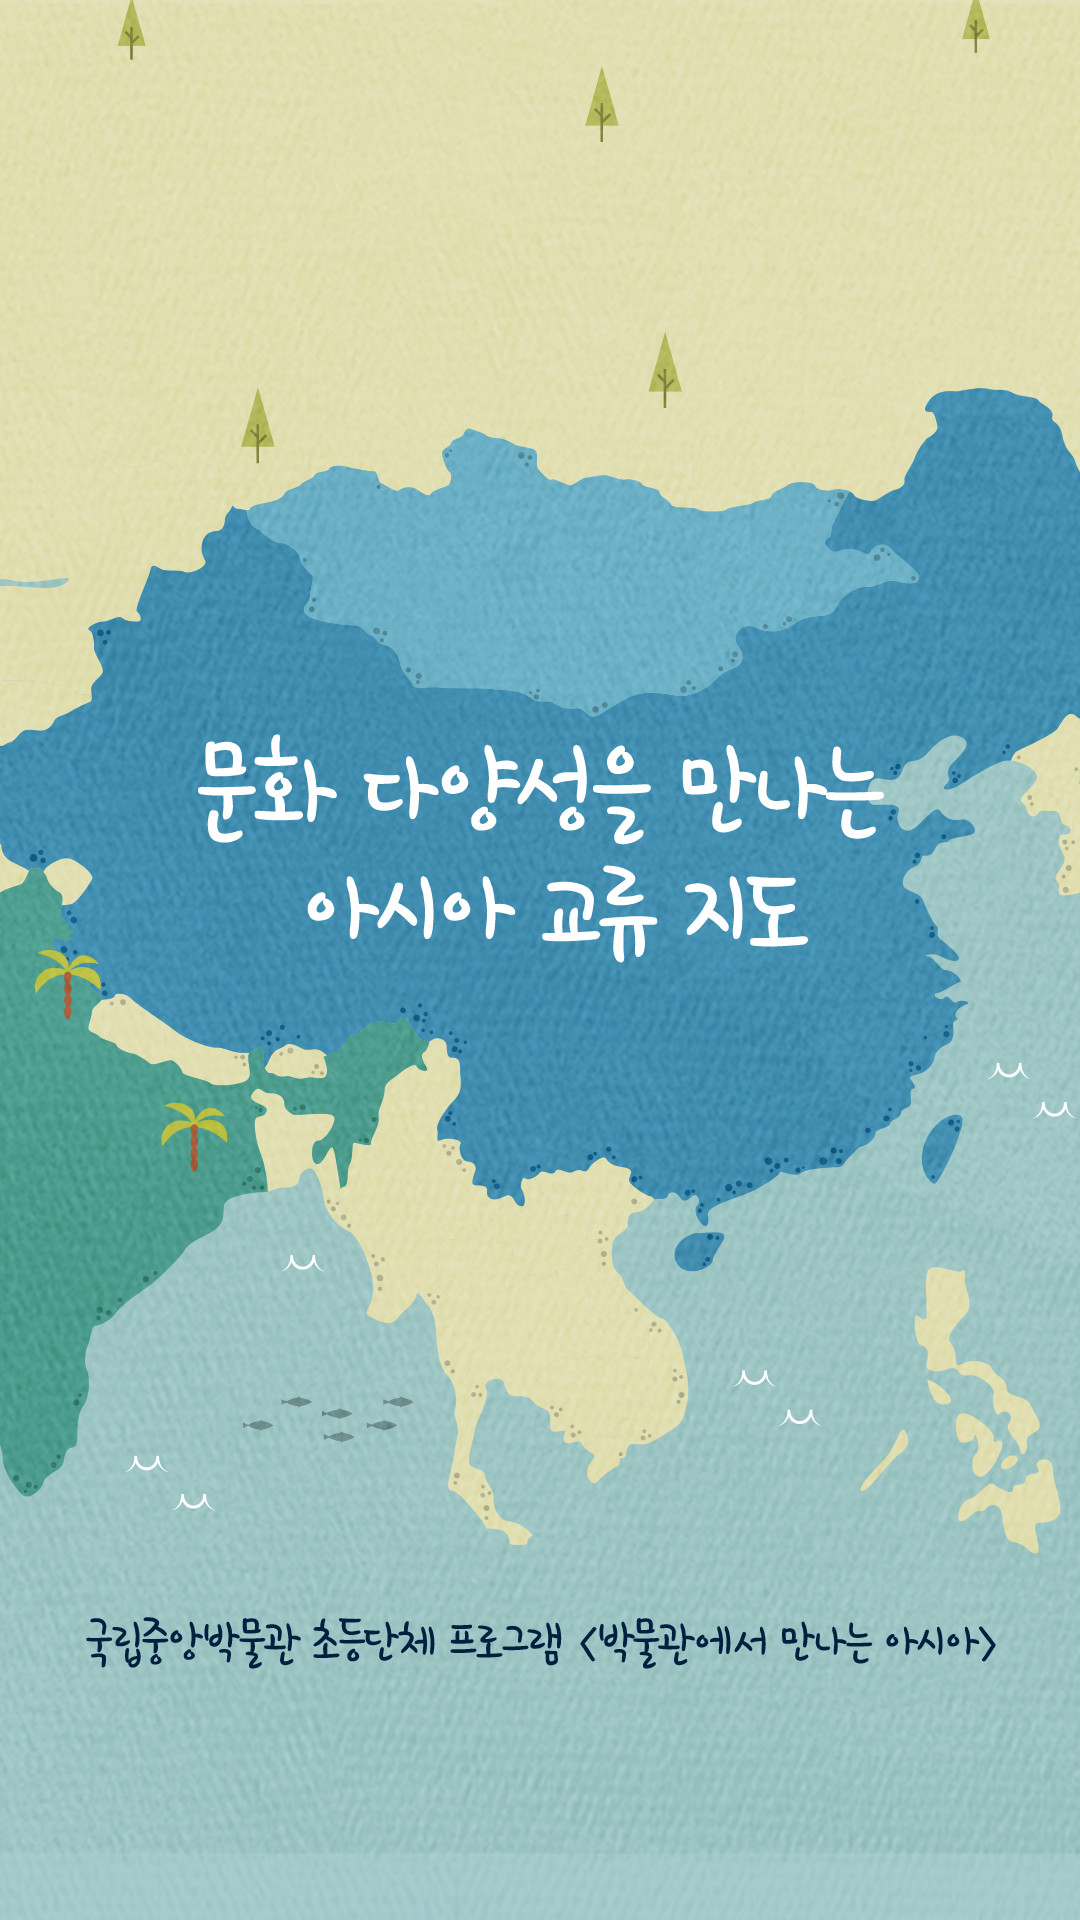 문화 다양성을 만나는 아시아 교류 지도